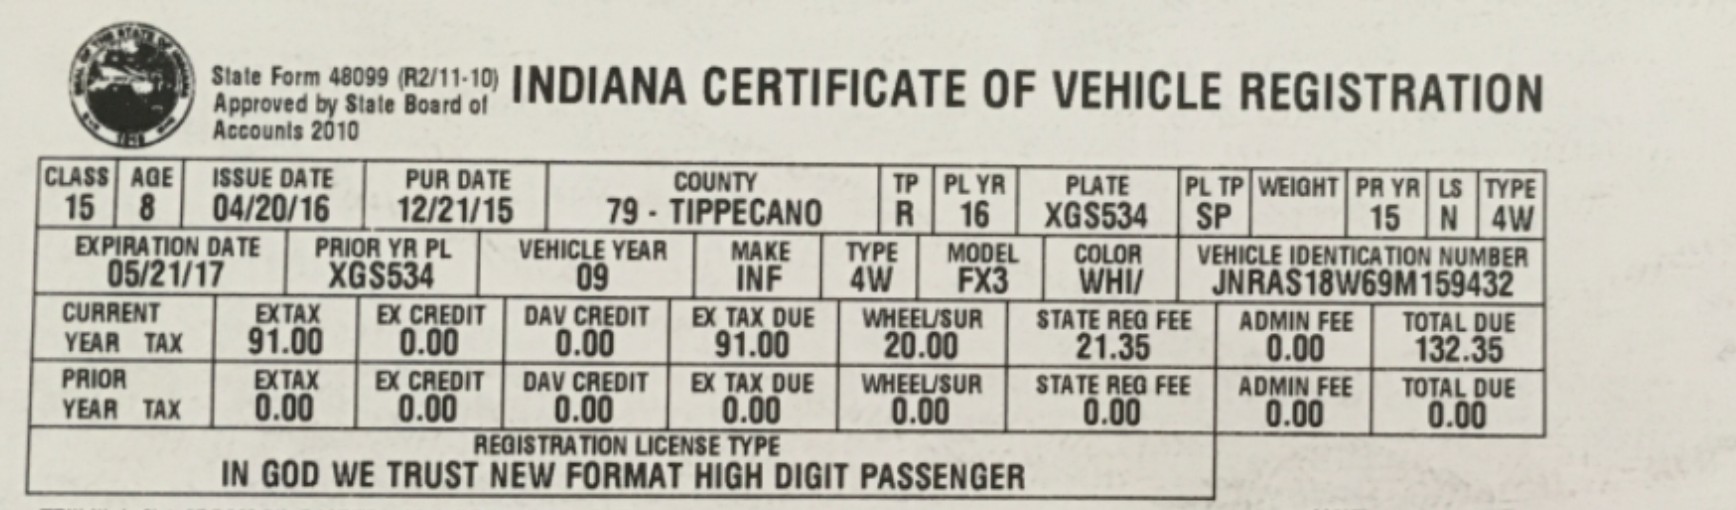 indiana vehicle registration